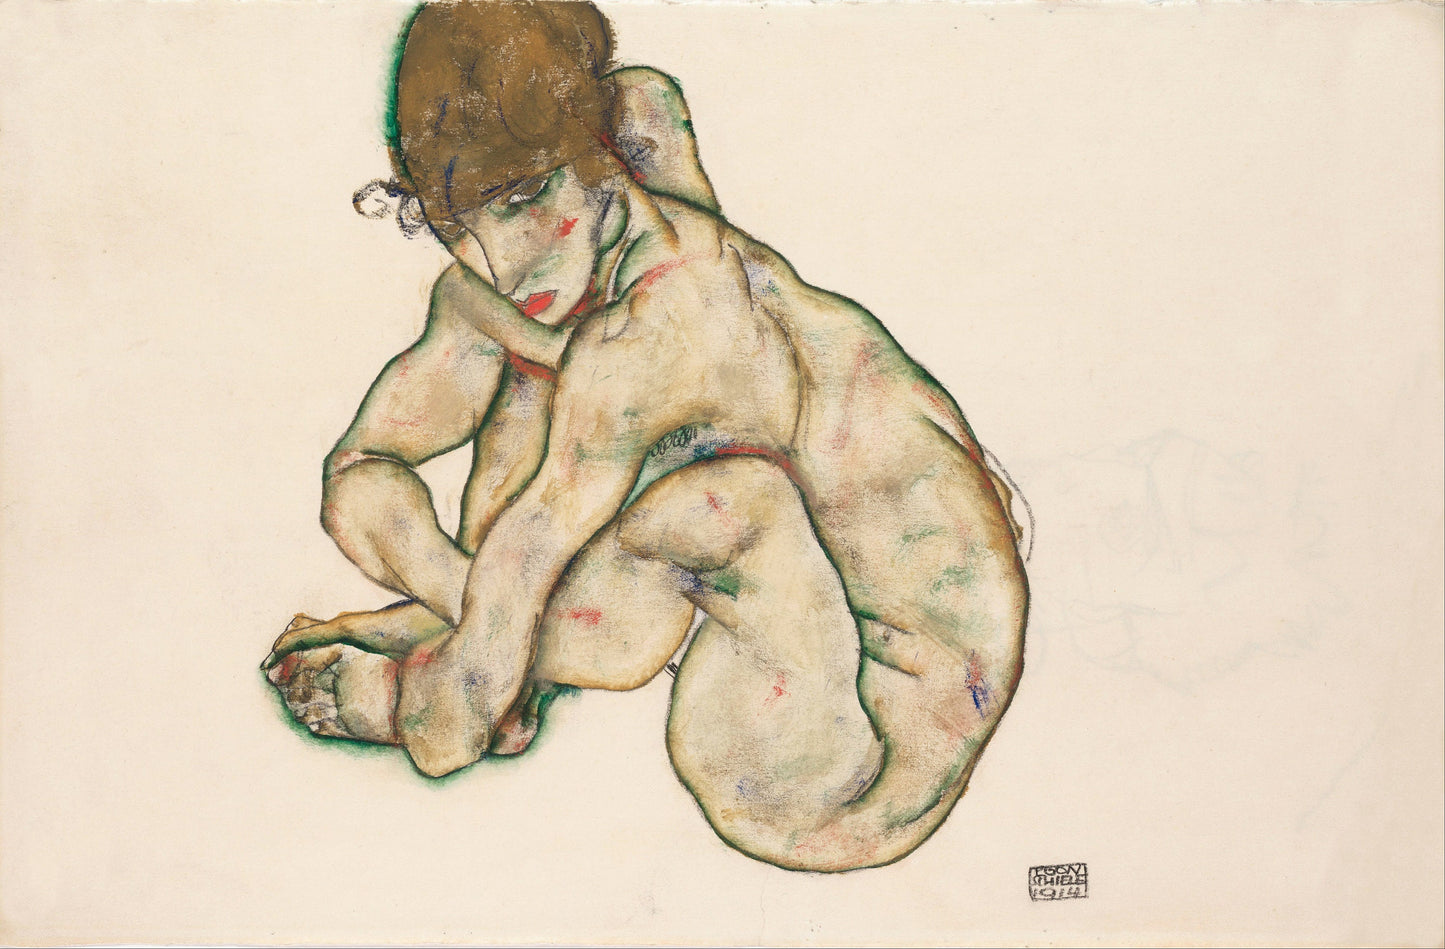 Egon Schiele Expressionist Artworks Set 1 [39 Images]